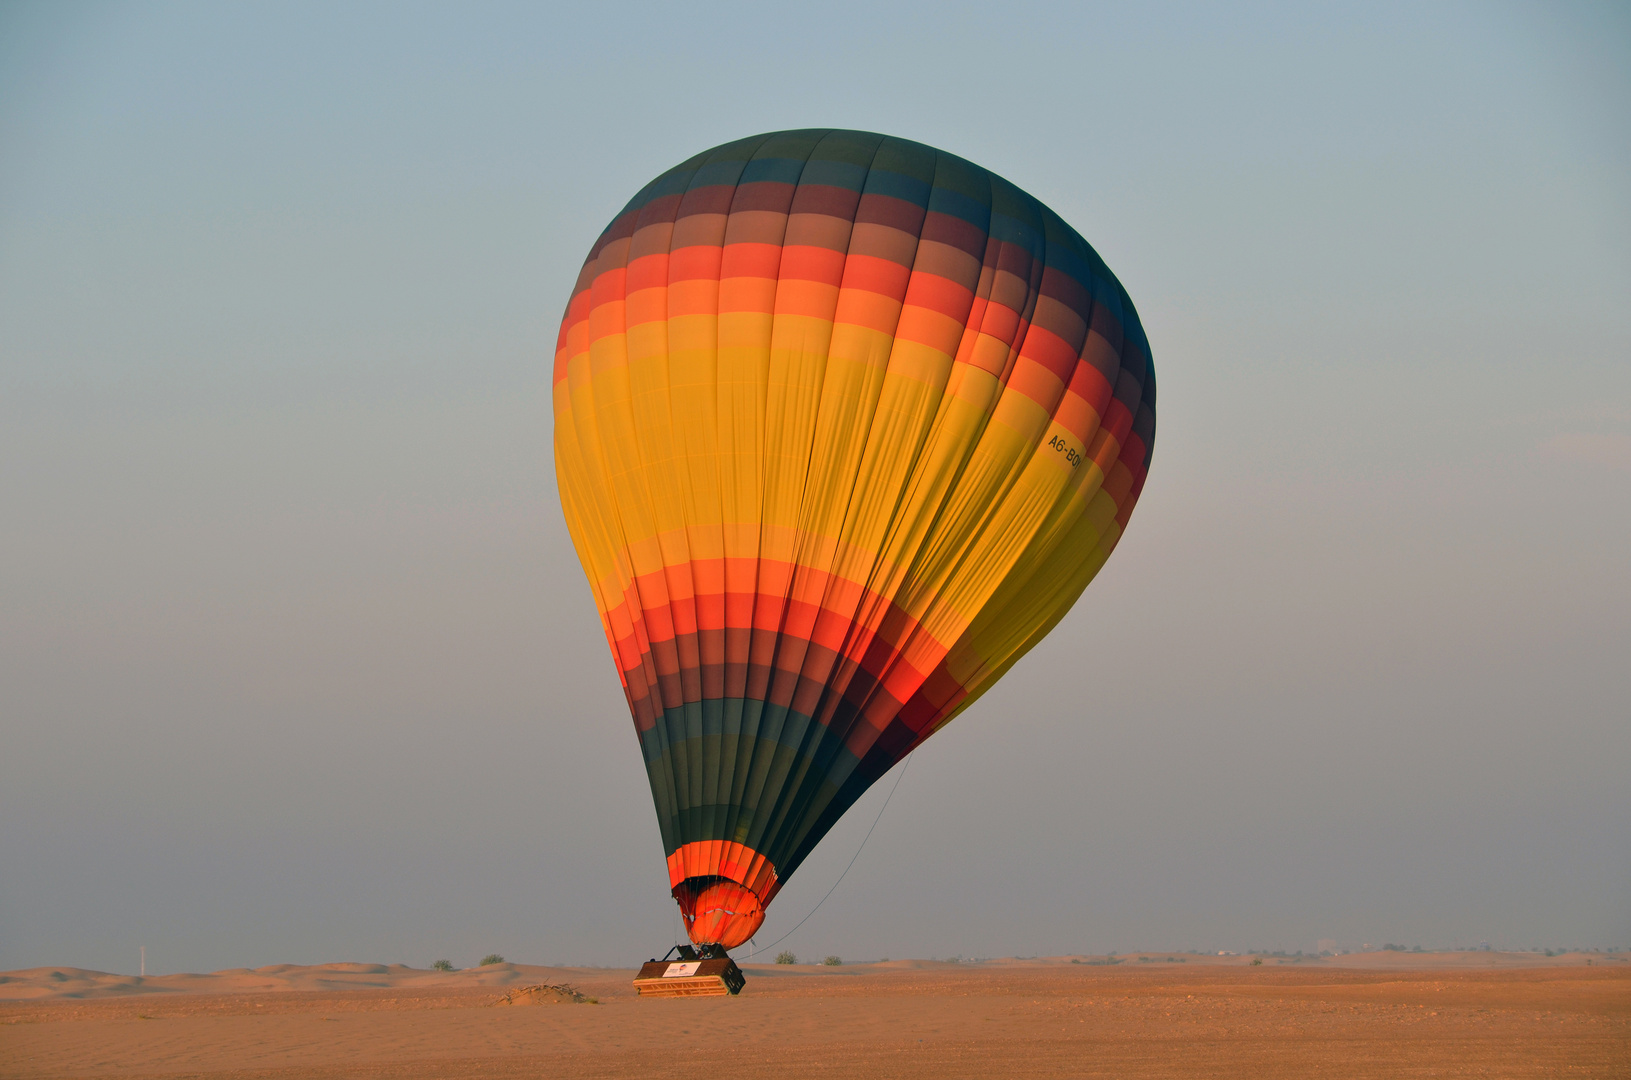 Landung in der Wüste von Dubai